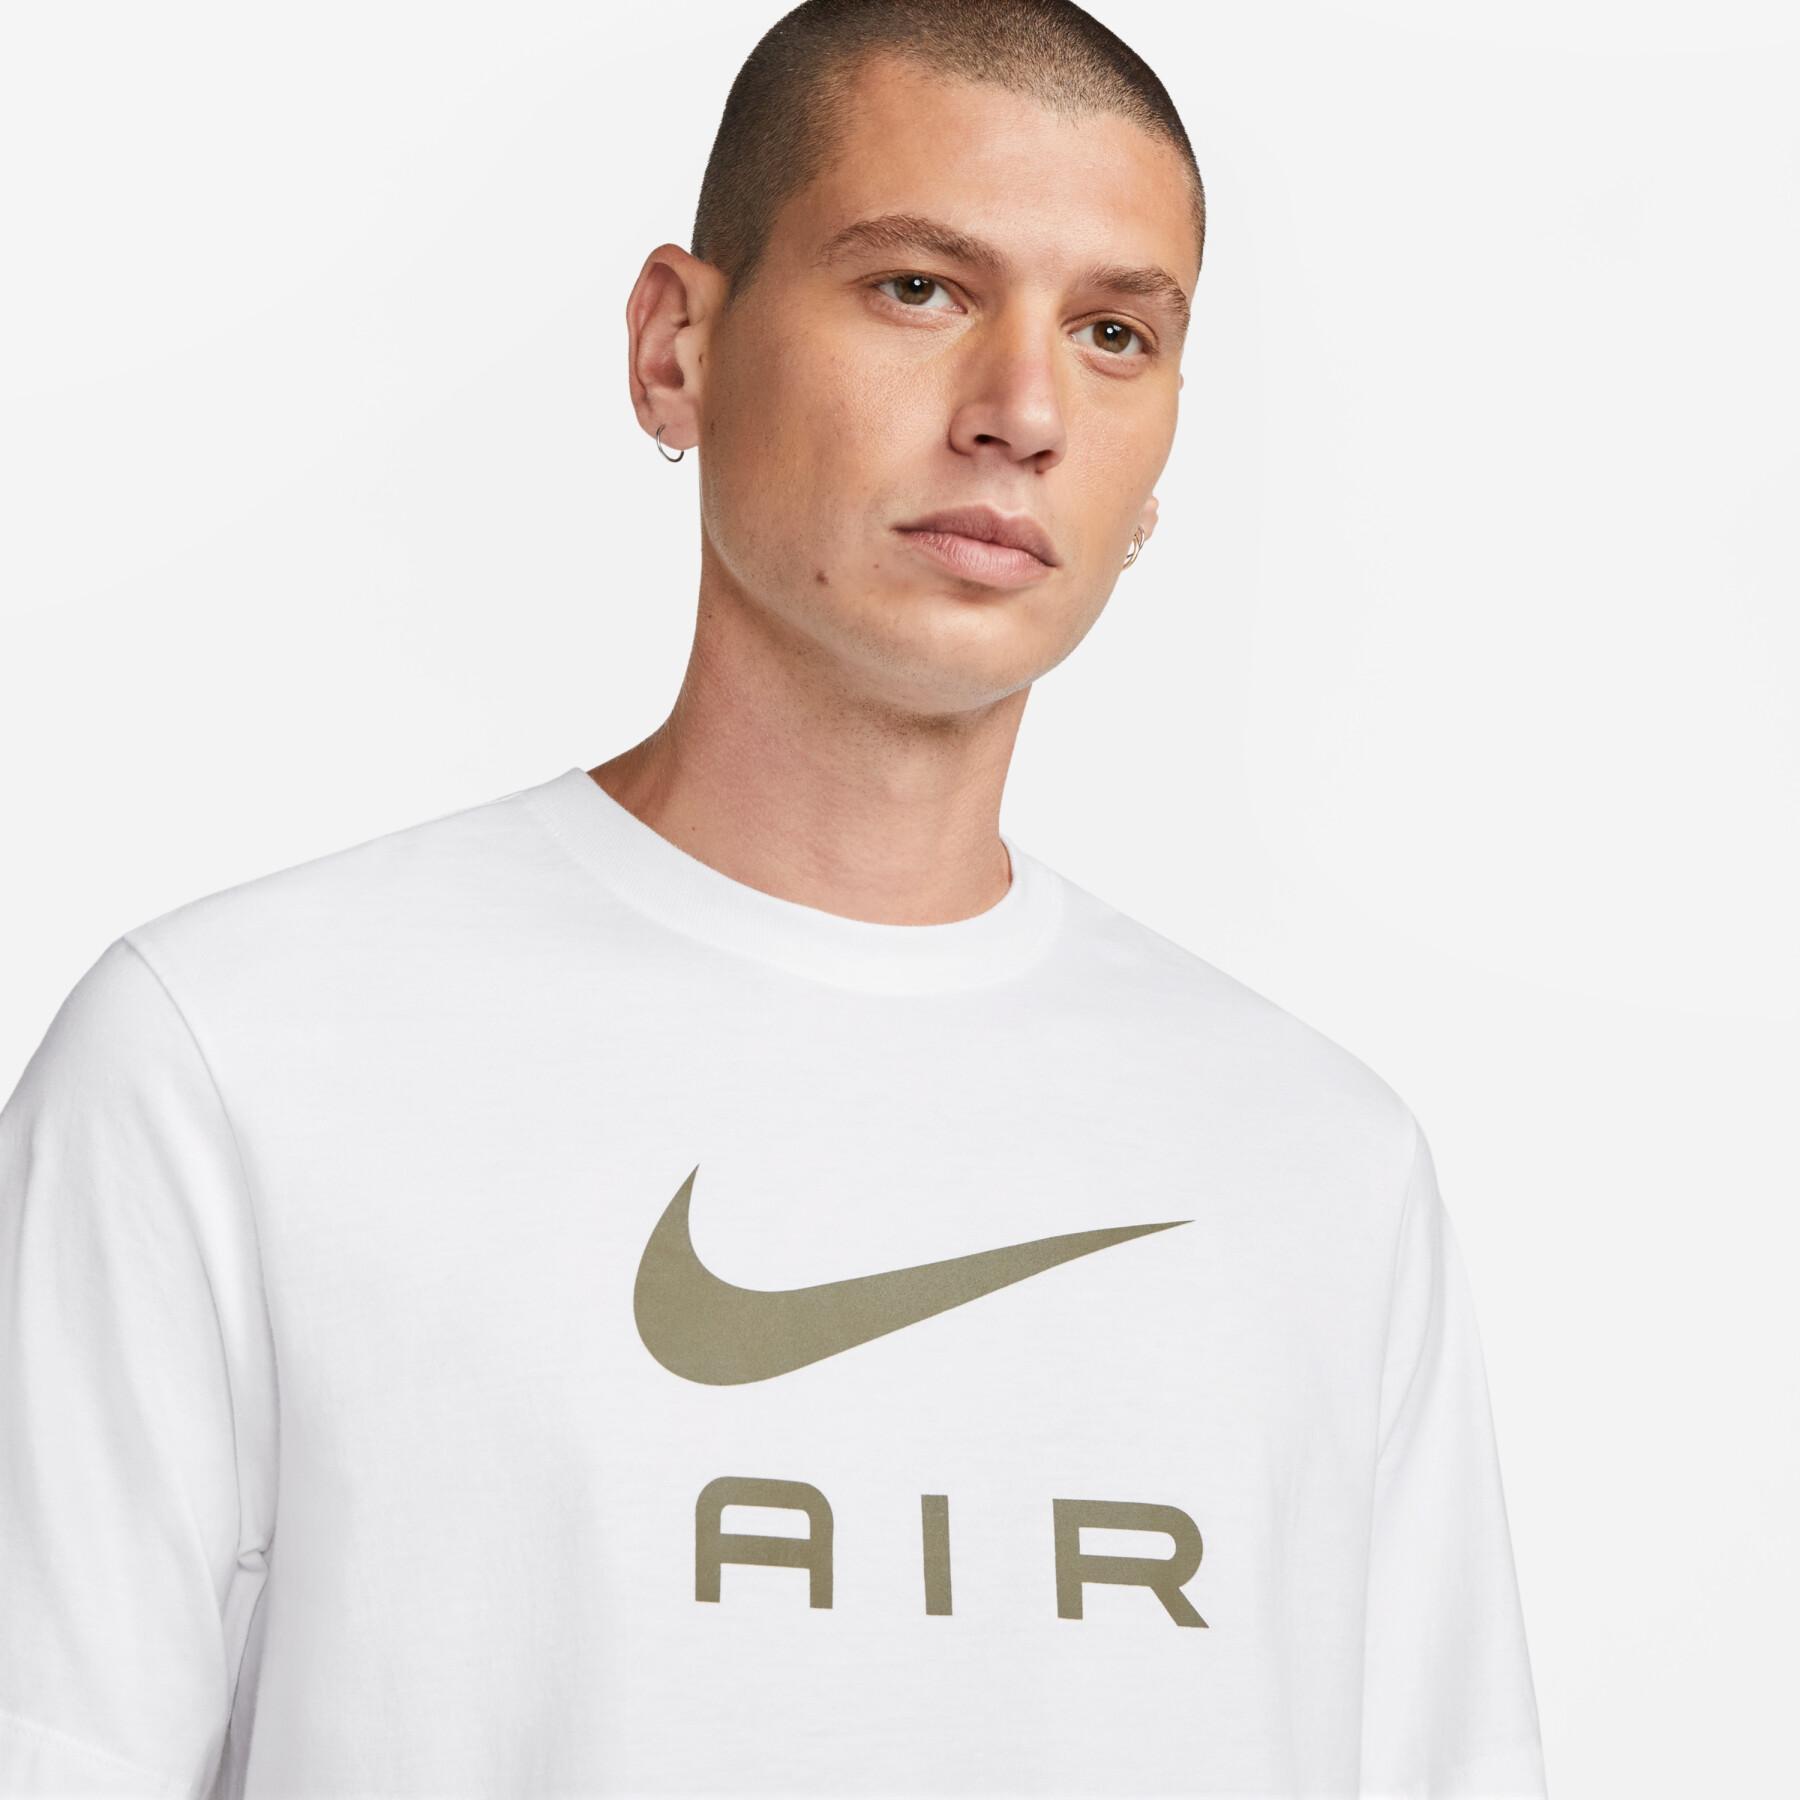 T-shirt Nike Sportswear Air